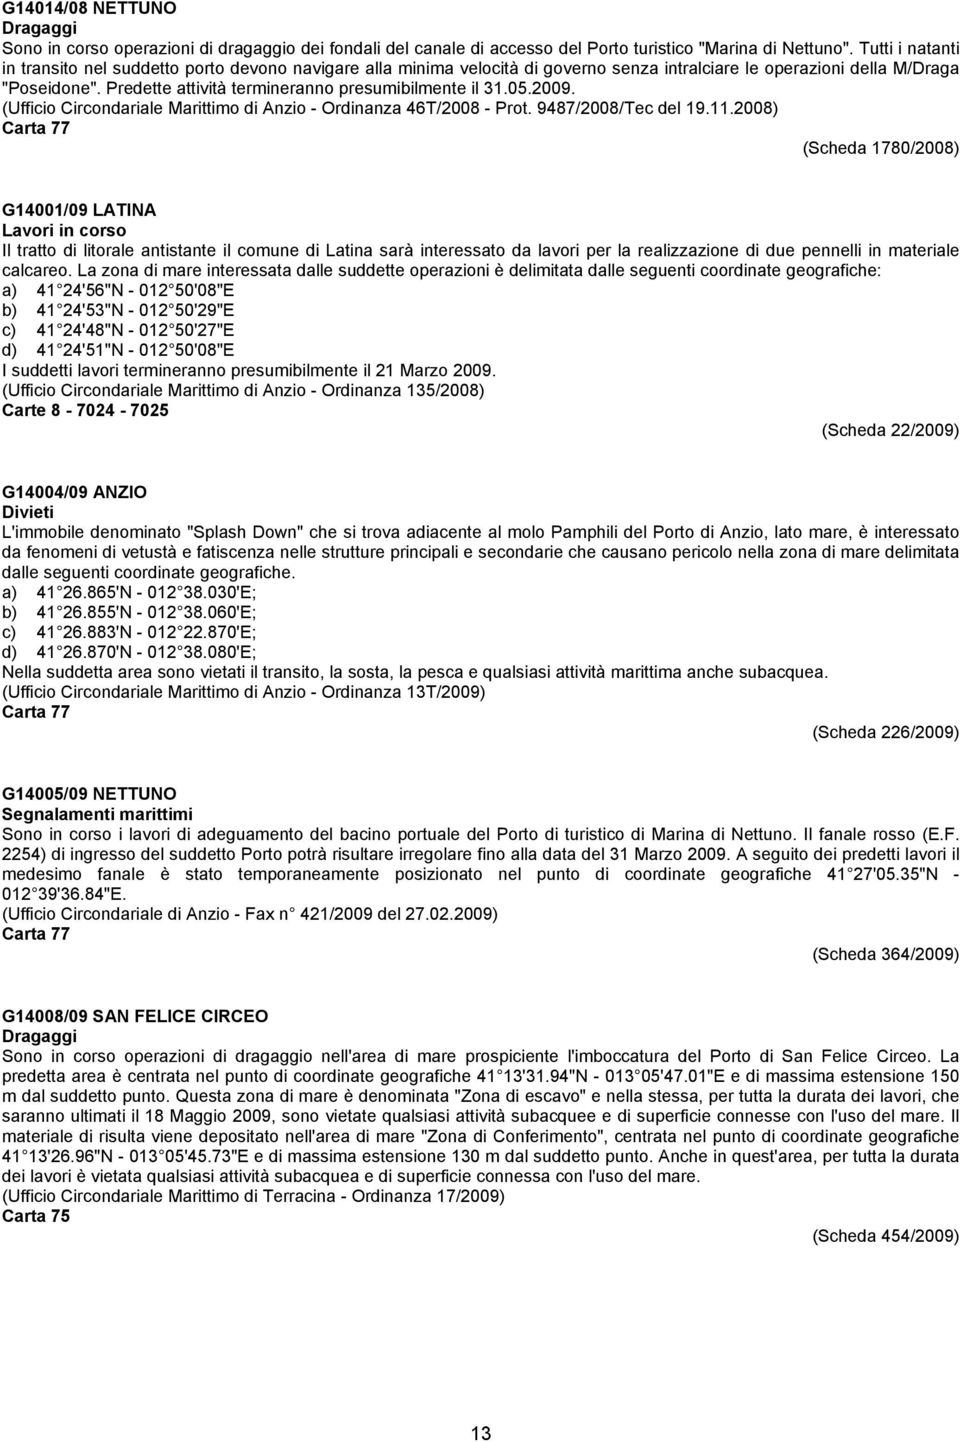 Predette attività termineranno presumibilmente il 31.05.2009. (Ufficio Circondariale Marittimo di Anzio - Ordinanza 46T/2008 - Prot. 9487/2008/Tec del 19.11.